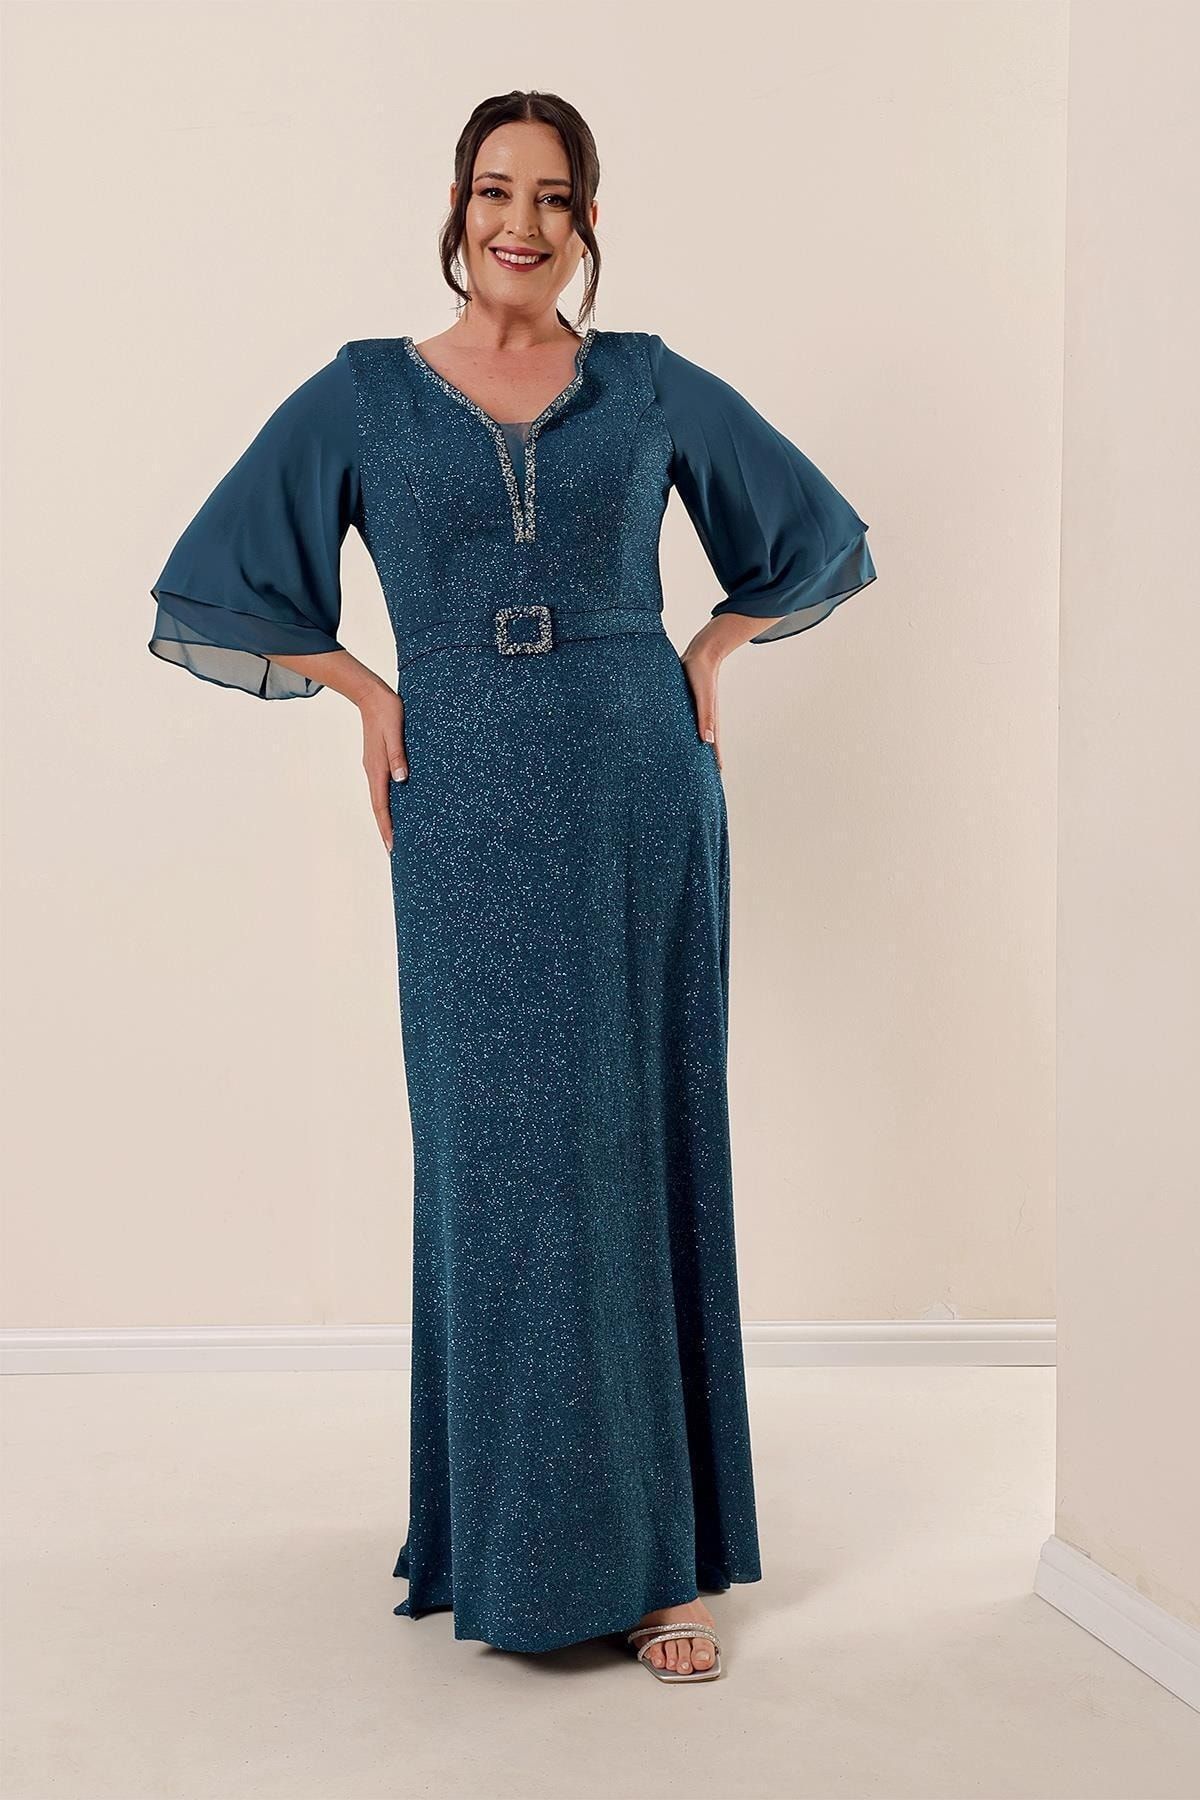 By Saygı Ön Arka V Yaka Şifon Kollu Astarlı Tokalı Büyük Beden Simli Uzun Elbise